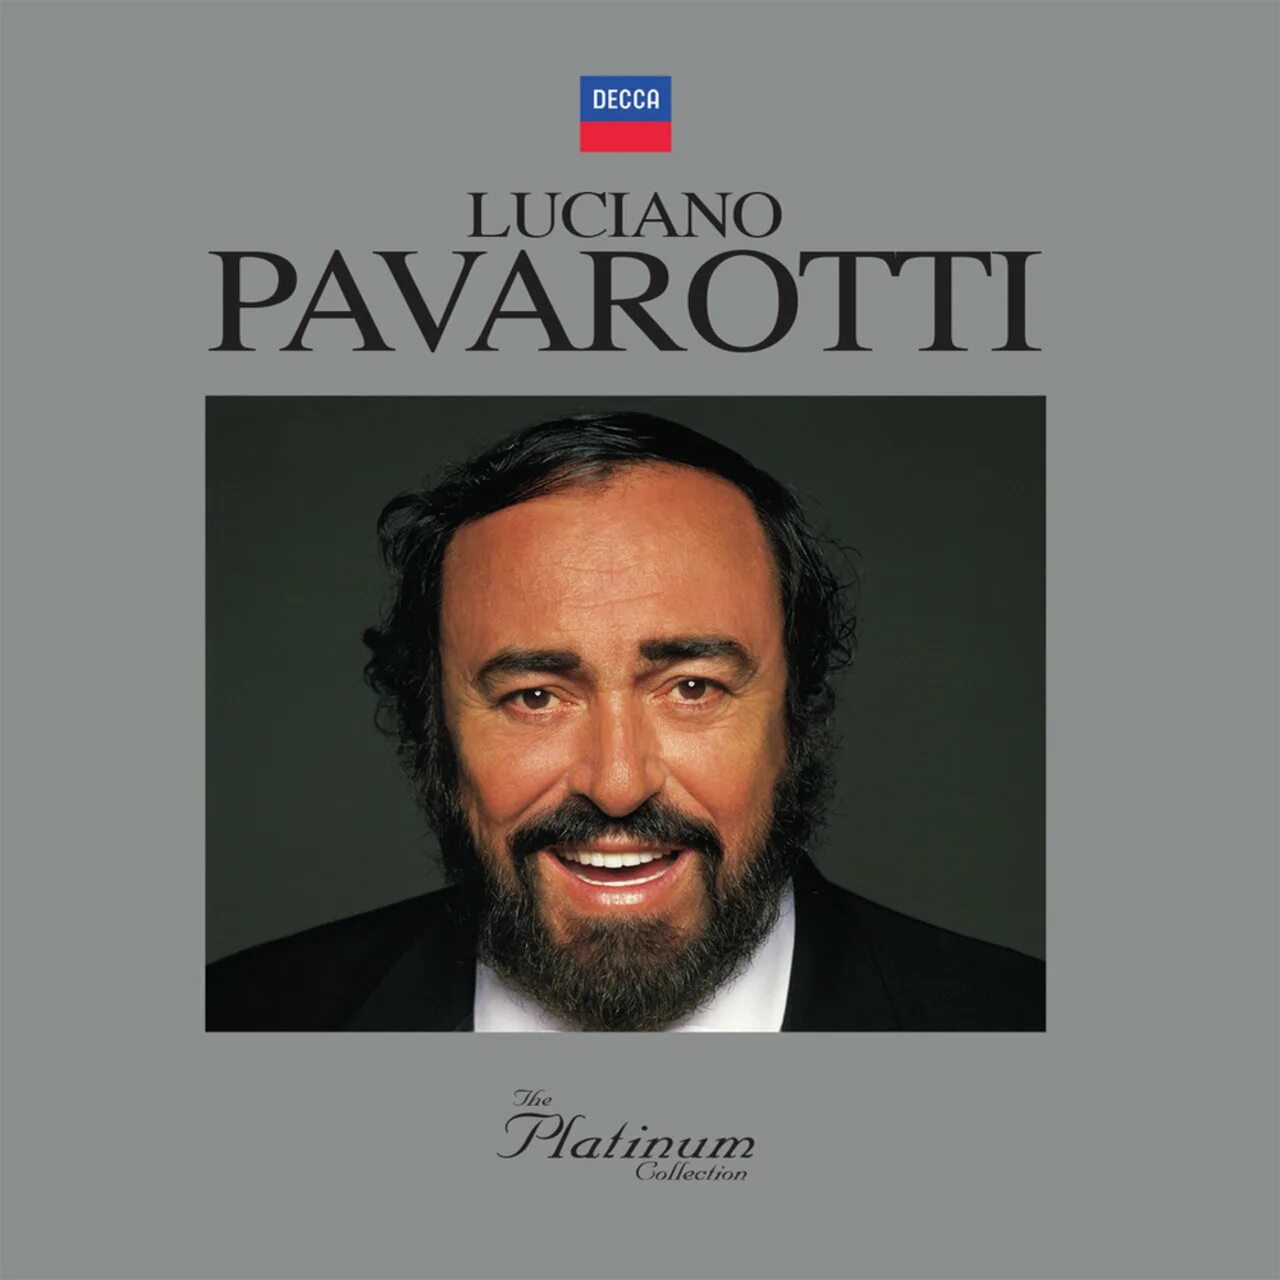 Лучано Паваротти. Лучано Паваротти три. Pavarotti обложки альбомов. Сообщение о Лучано Паваротти.